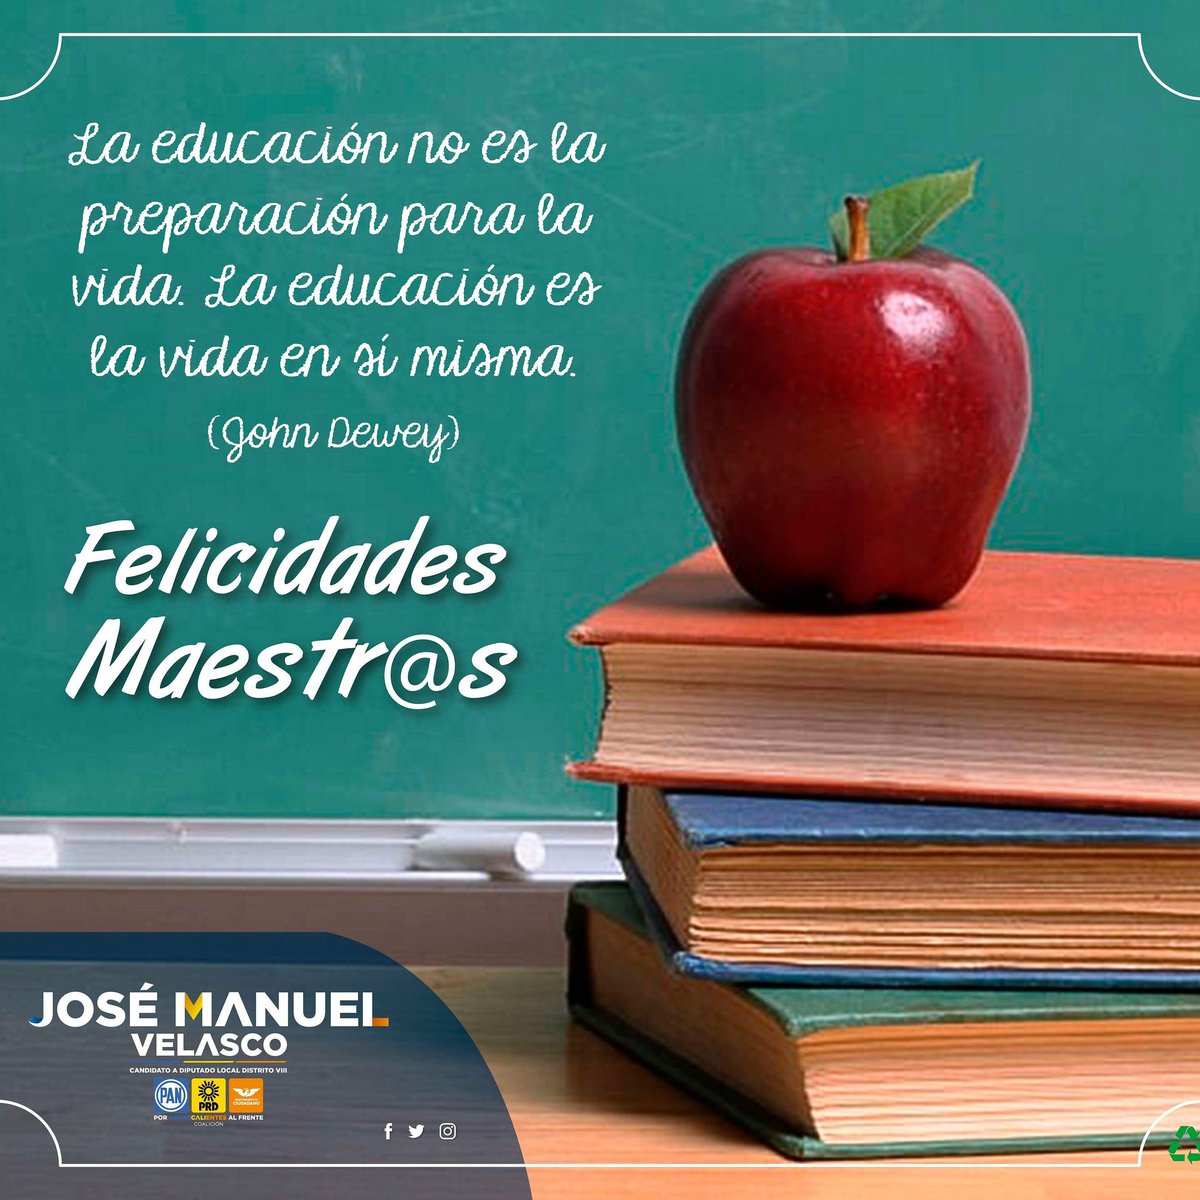 ¡Felicidades a todos los maestros por su día! 📚✏💼
Los invito a que #JuntosSigamosTrabajando por una mejor educación en Calvillo y San José de Gracia.